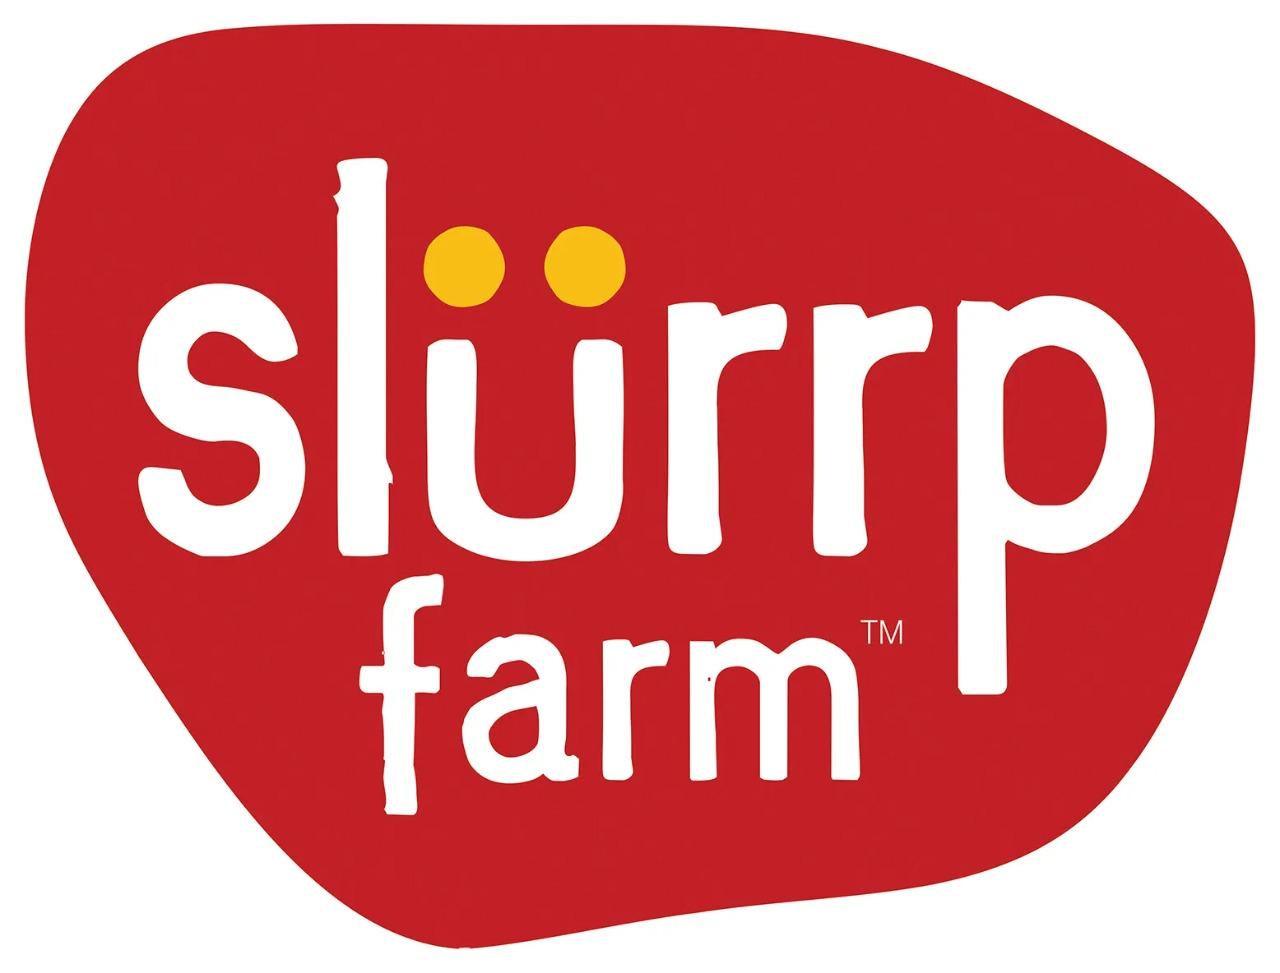 Zippy Edibles client Slurrp Farm